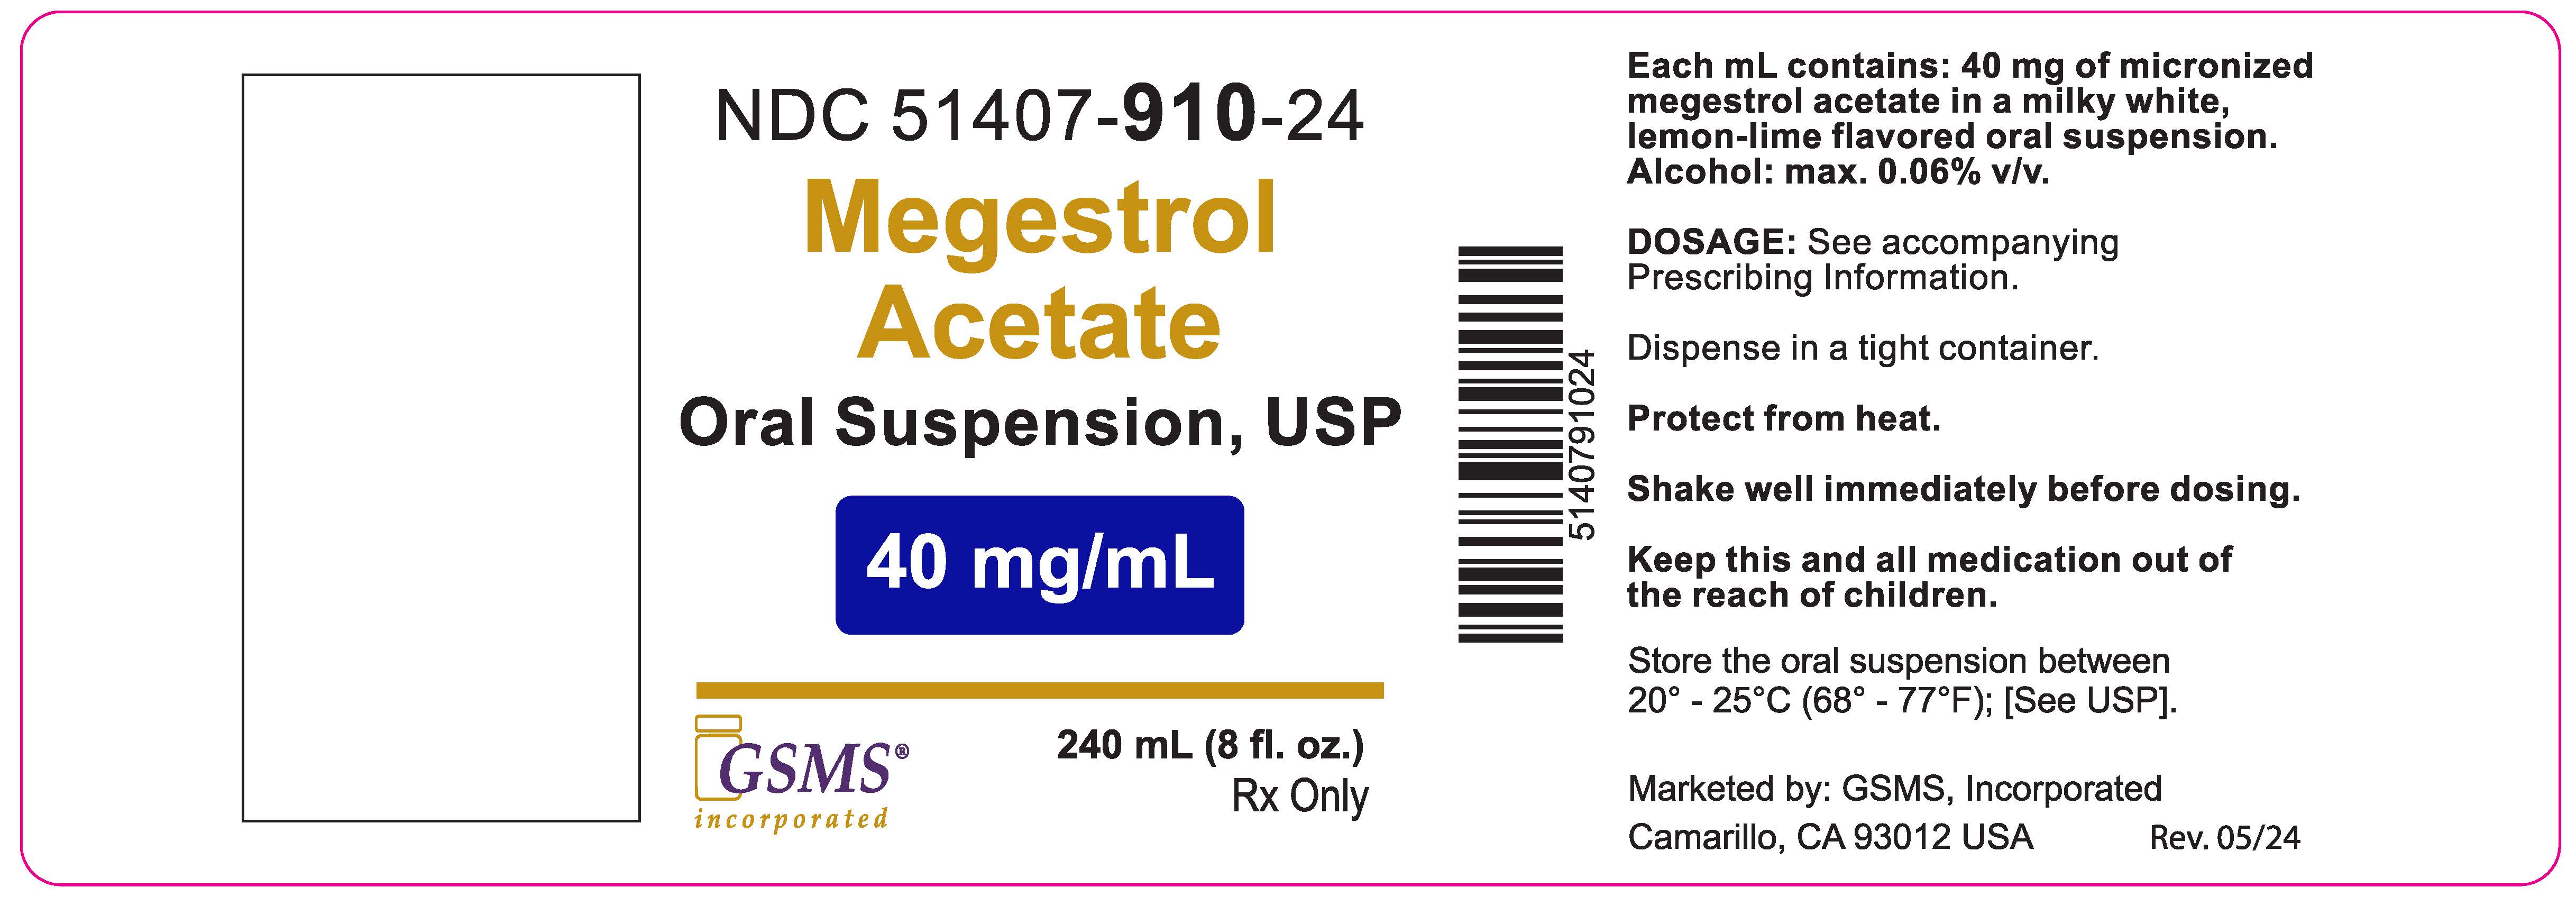 51407-910-24OL - Megestral Acetate 40 mg-mL - Rev. 0524.jpg